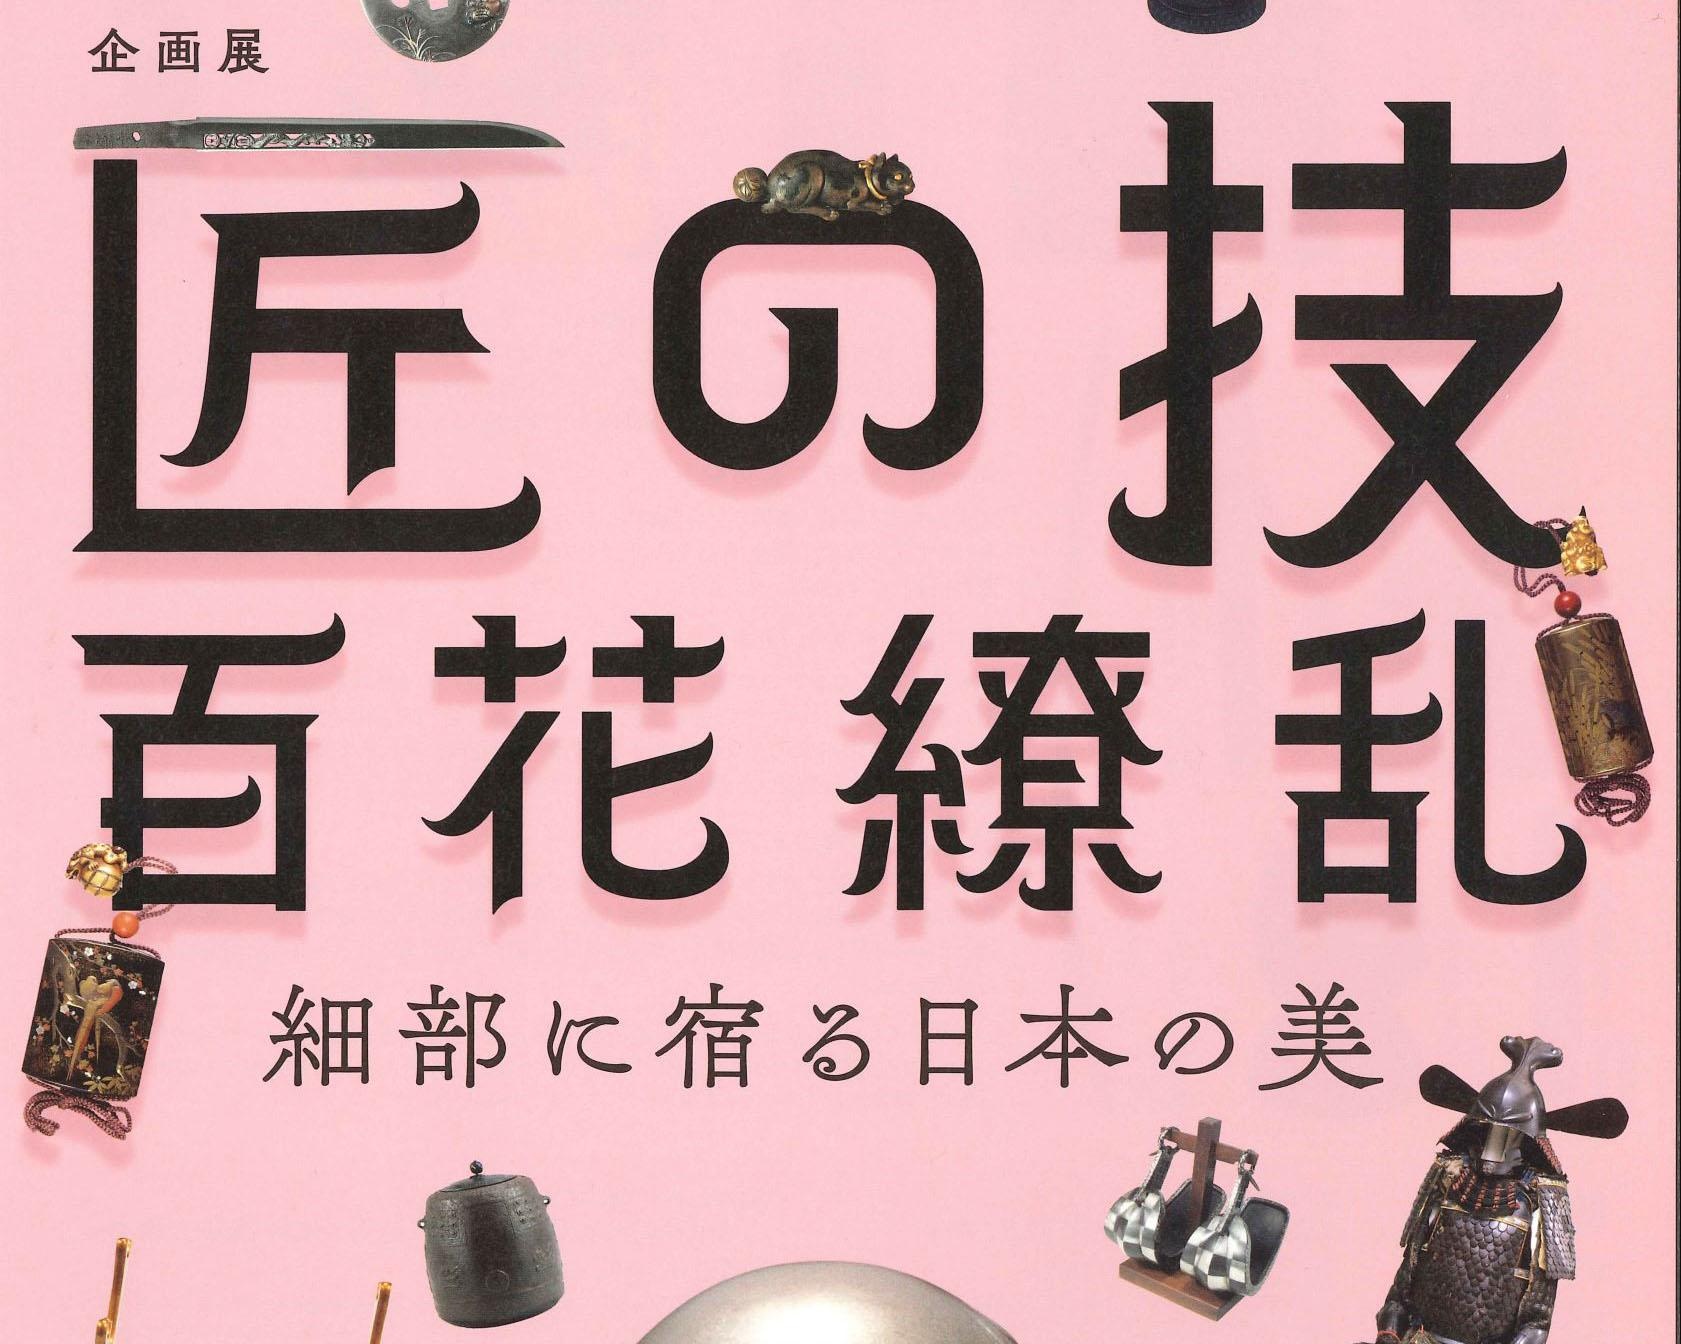 細部にこだわる職人の技を堪能、岡山県岡山市で「匠の技・百花繚乱―細部に宿る日本の美―」開催